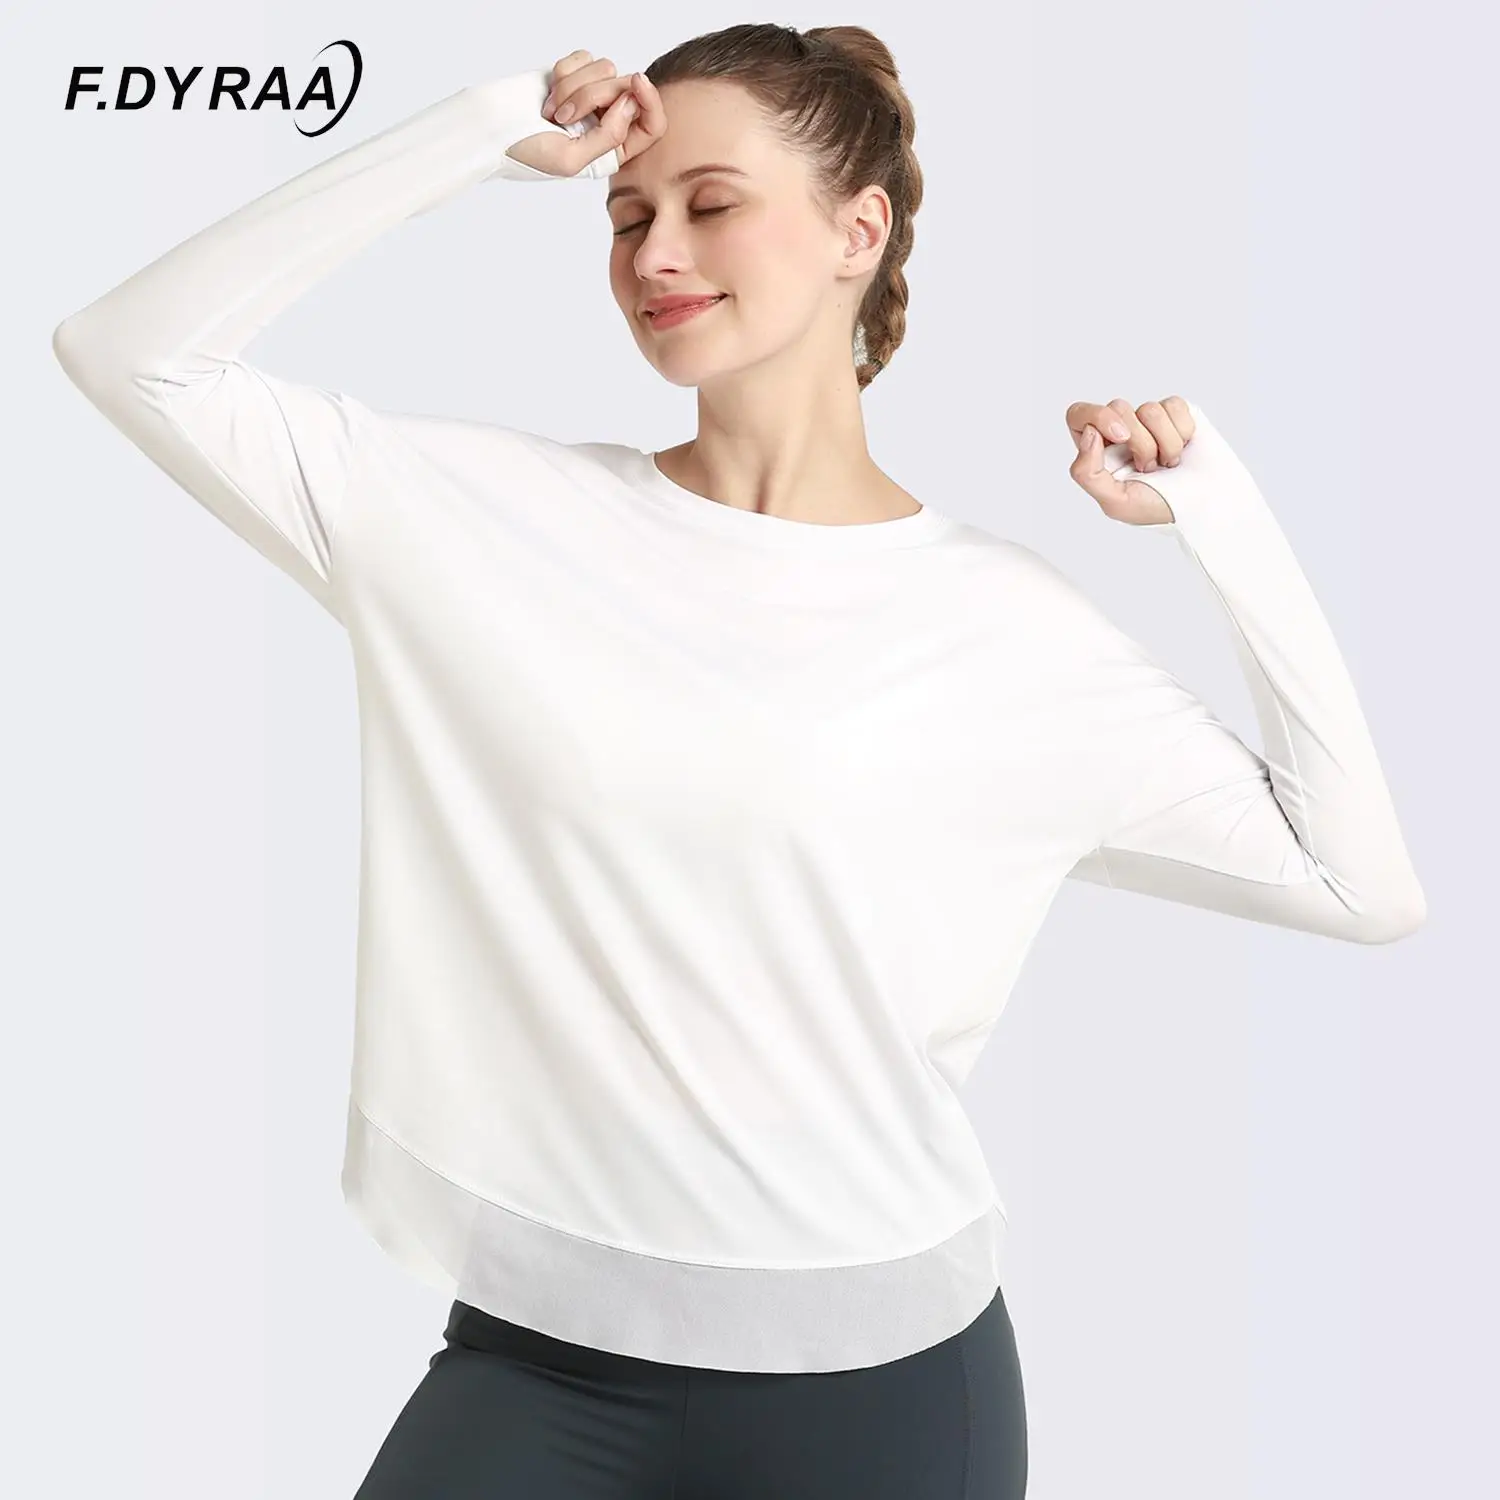 F.DYRAA женская рубашка с длинным рукавом для йоги фитнеса тренажерного зала